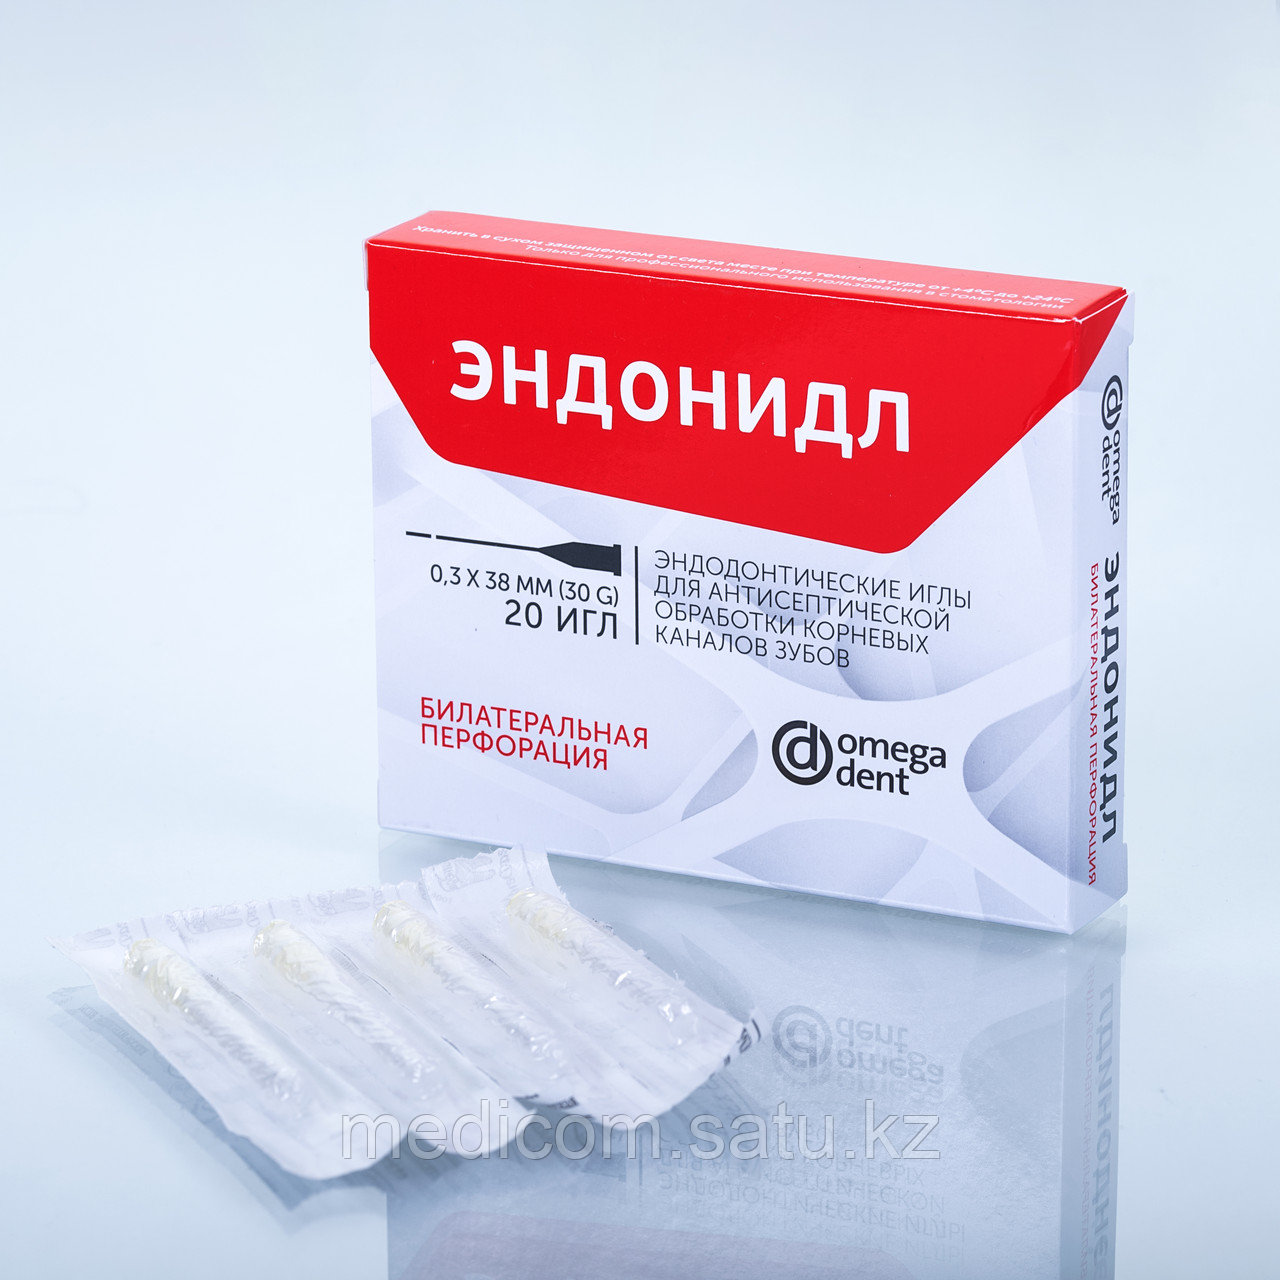 ЭНДОНИДЛ Эндодонтические иглы для антисептической обработки корневых каналов, упаковка 20 шт